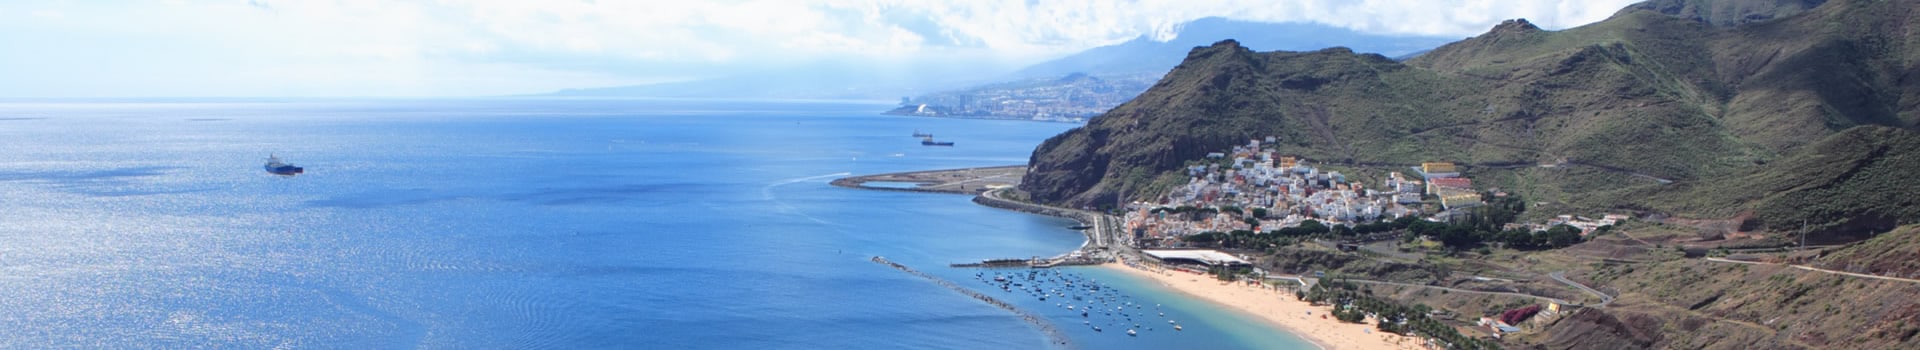 Bilhetes de barco e ferry em Tenerife